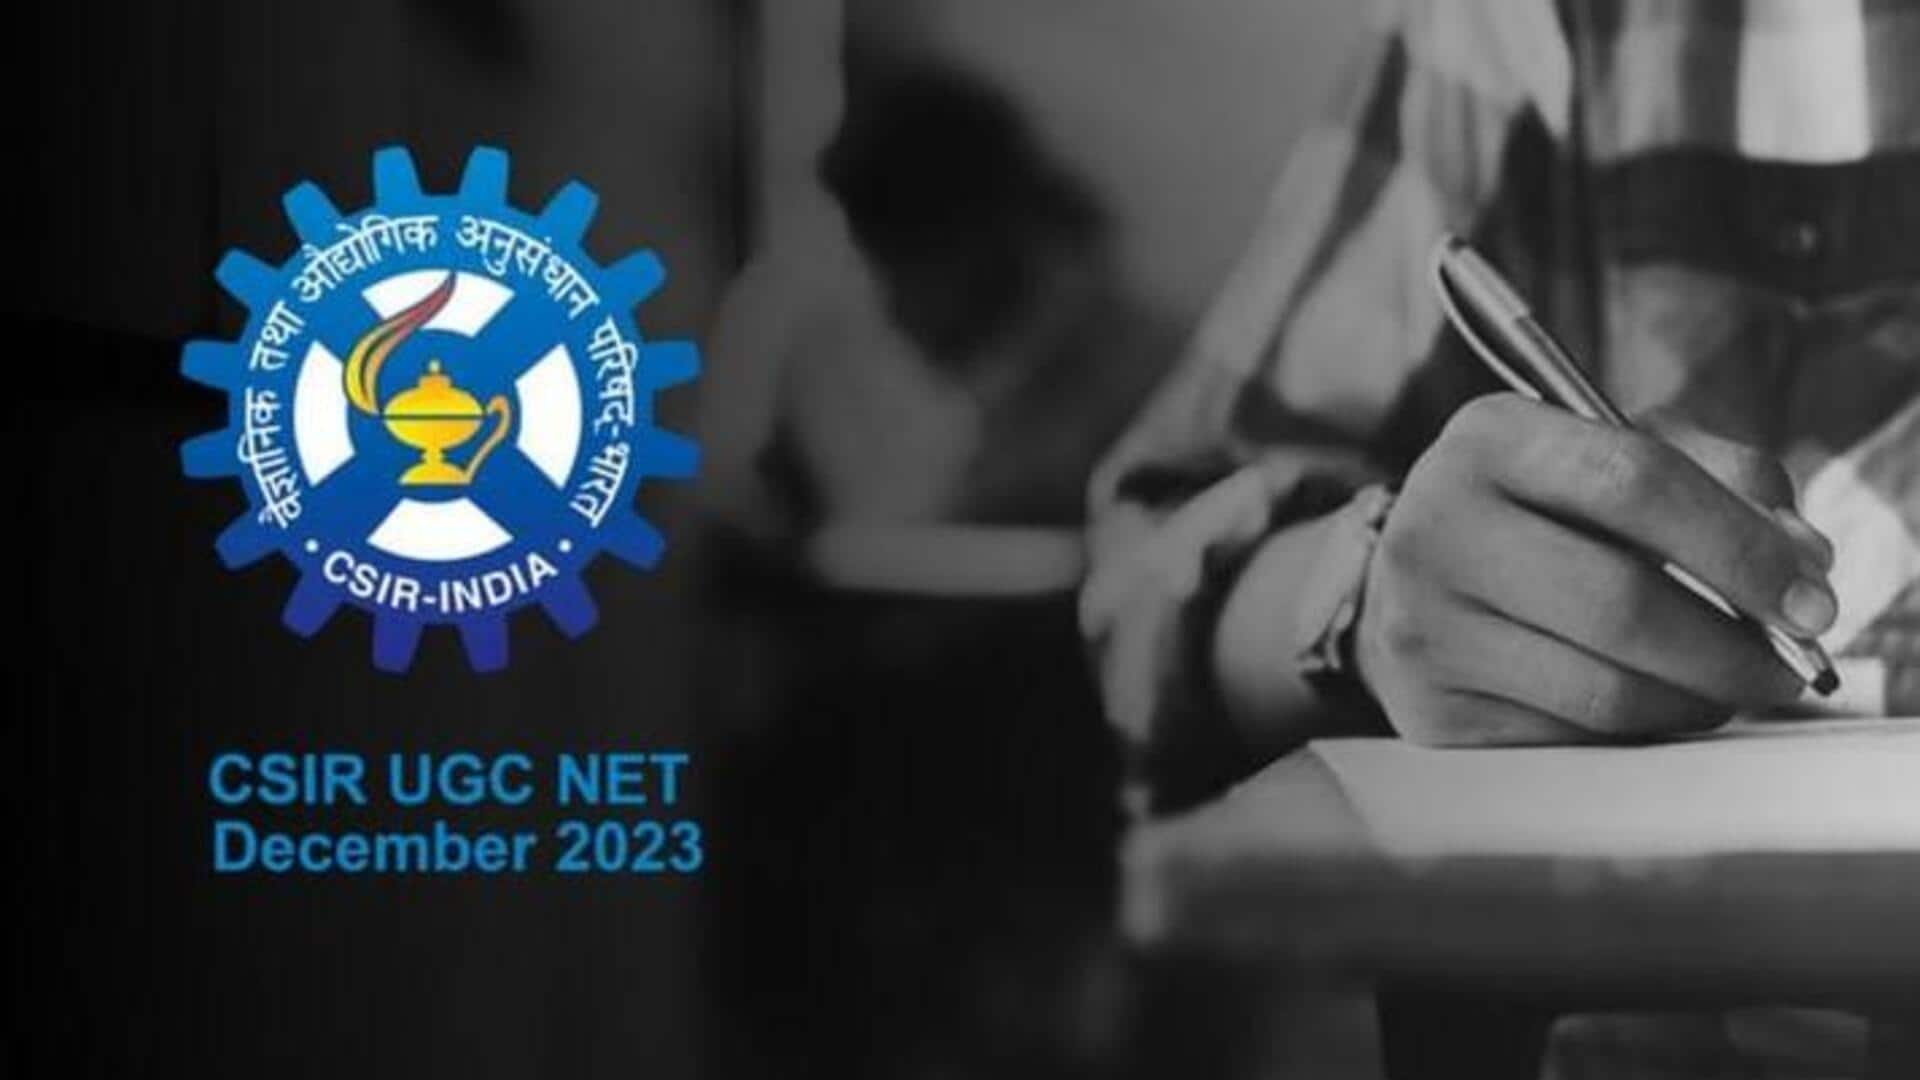 CSIR NET के लिए आवेदन की आखिरी तारीख आगे बढ़ी, अब 4 दिसंबर तक करें पंजीकरण